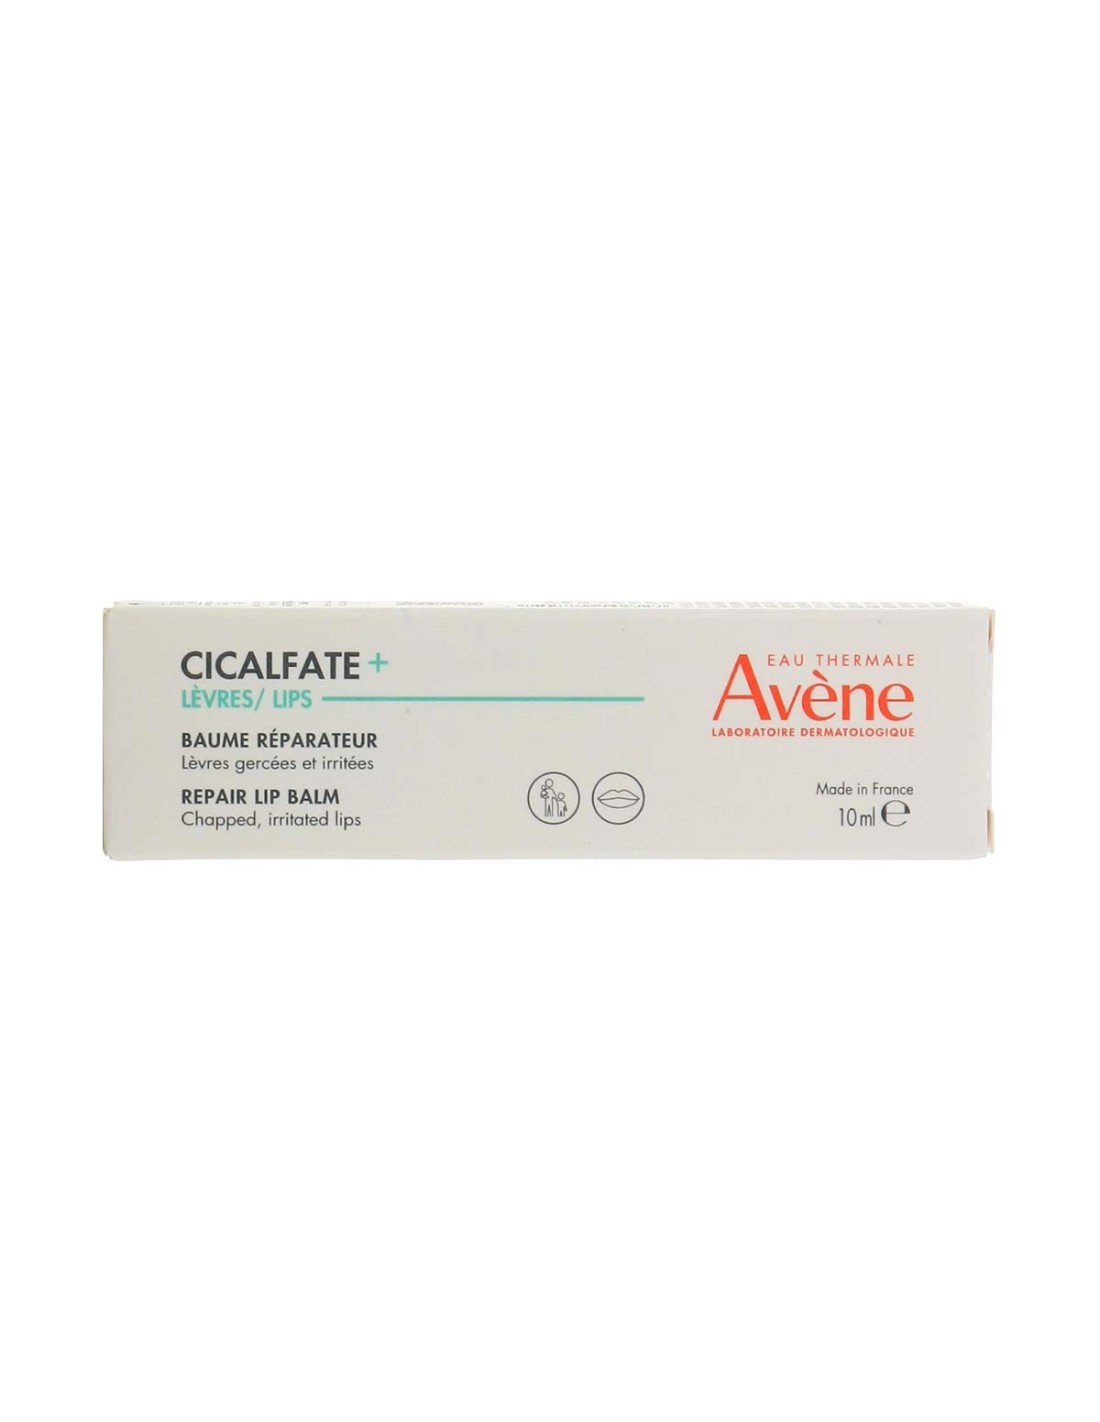 Cicalfate LIPS Restorative Lip Cream by Avène